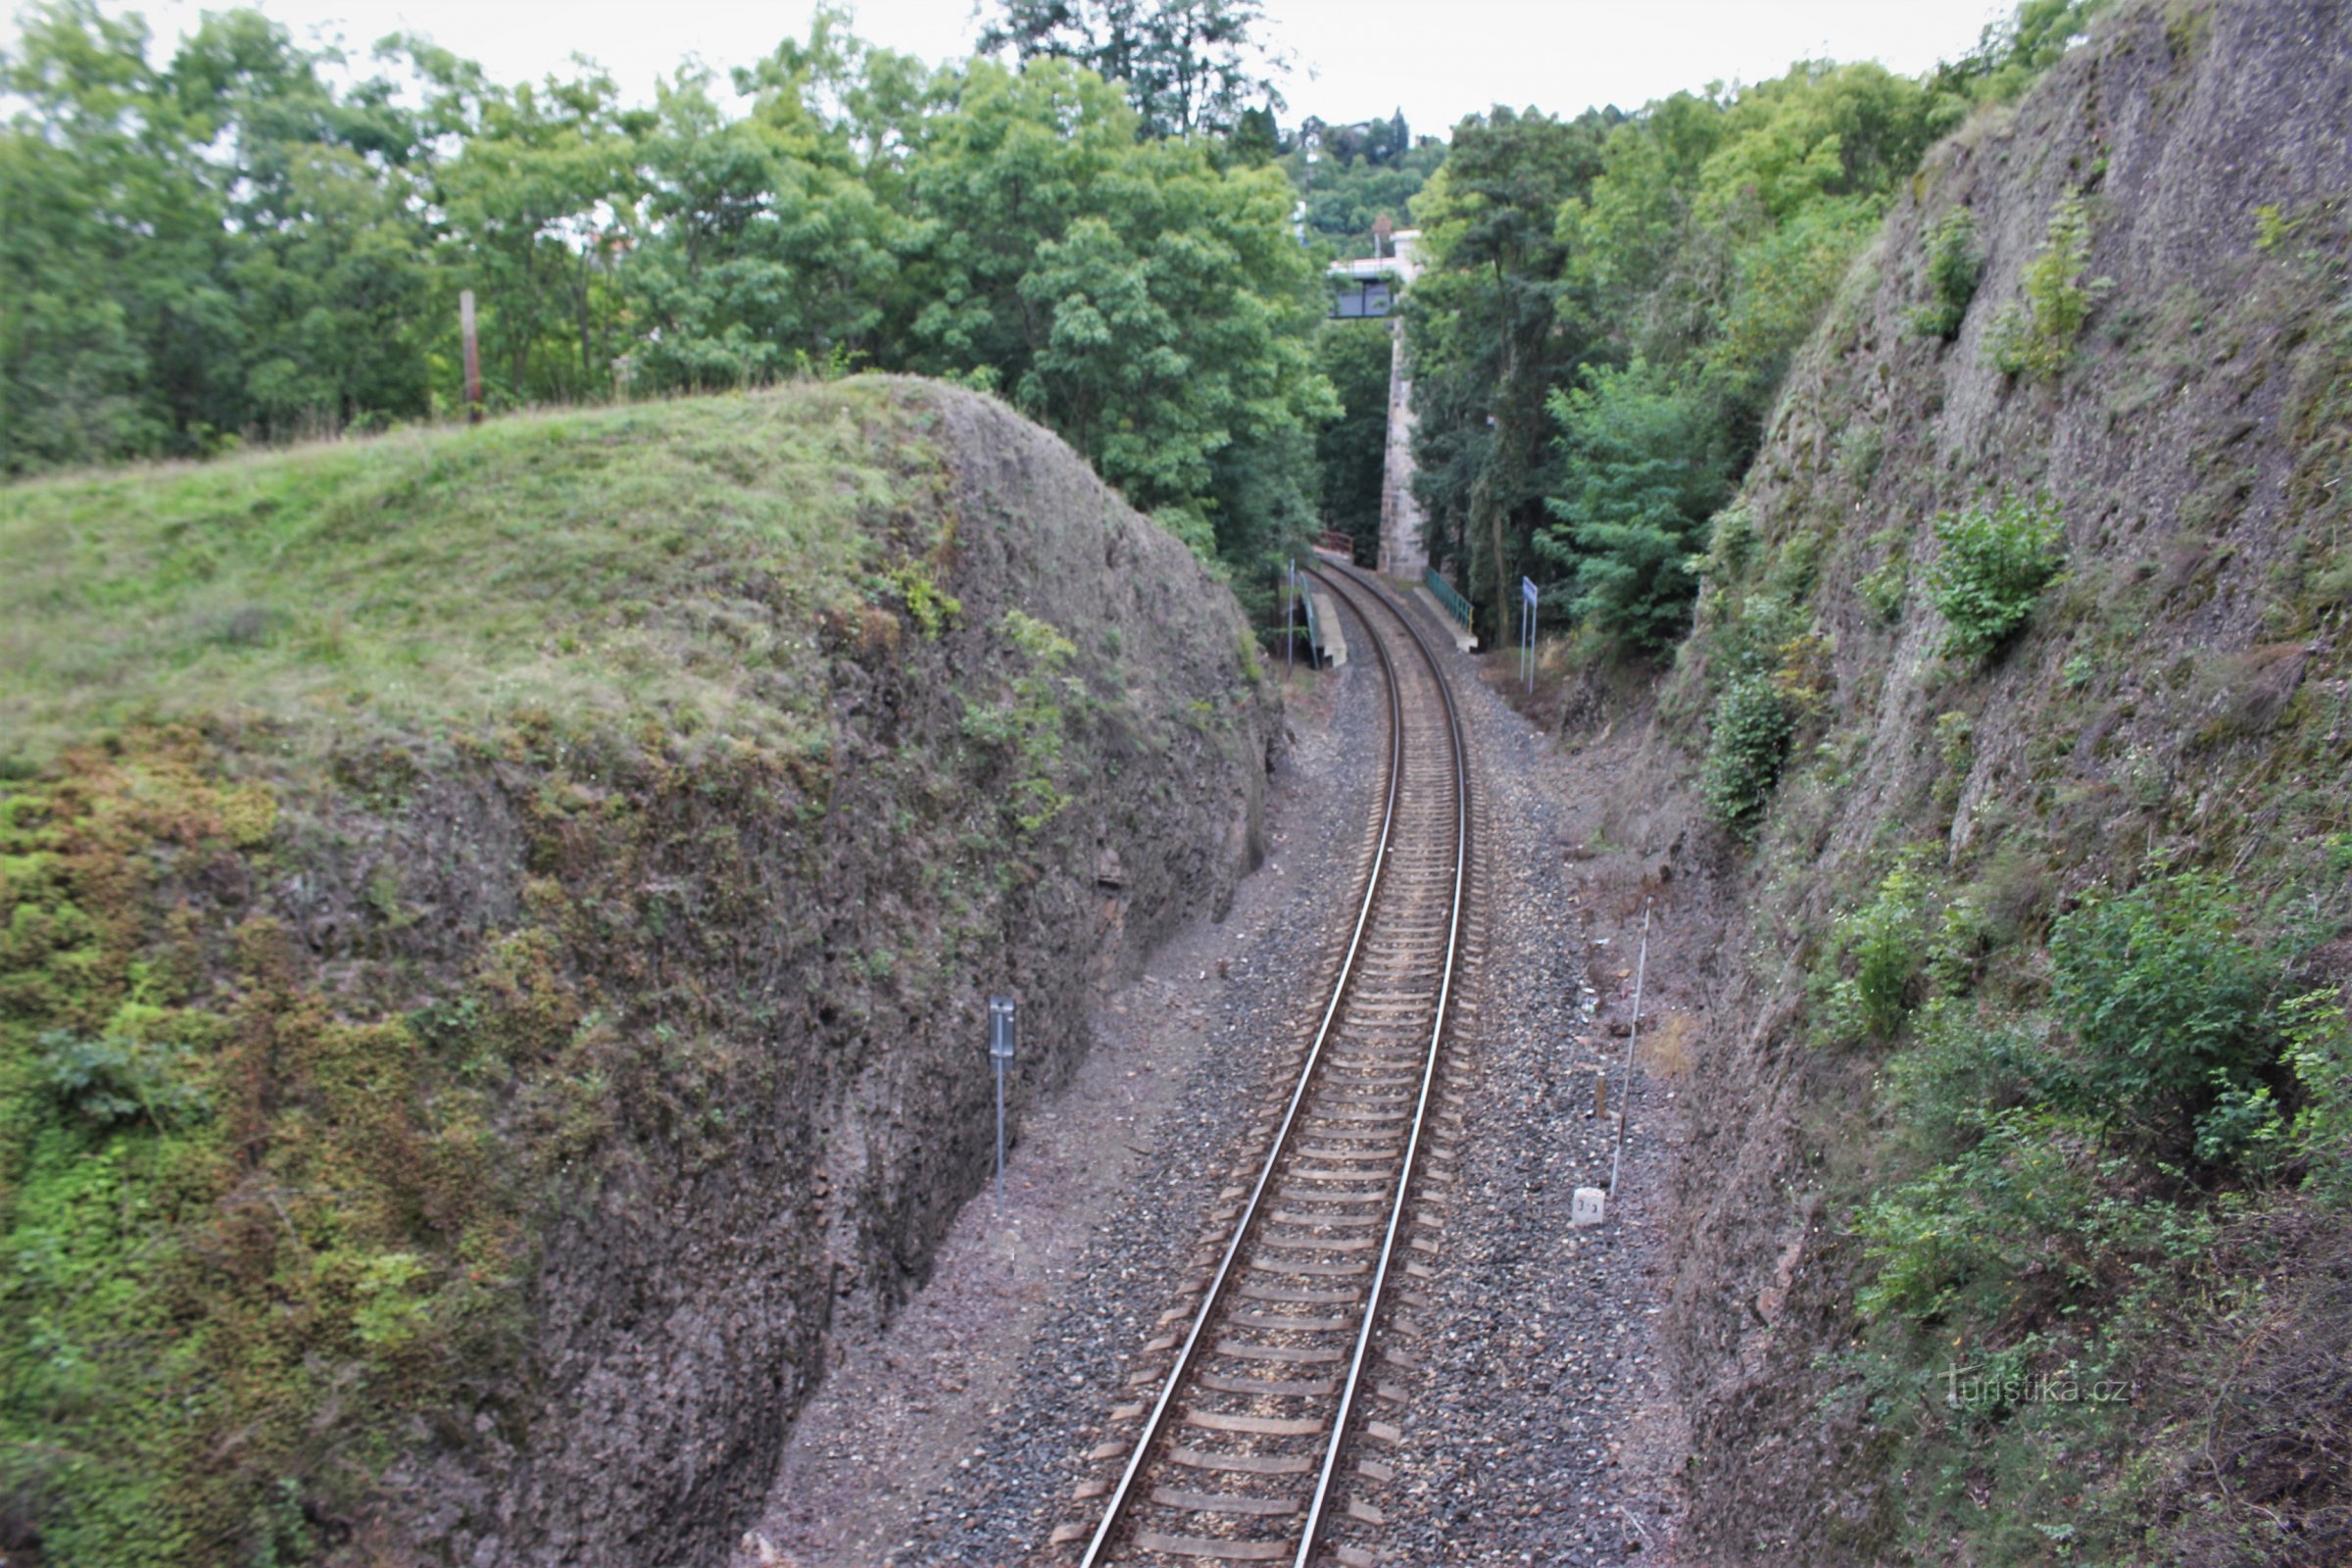 Railway cut - a natural monument